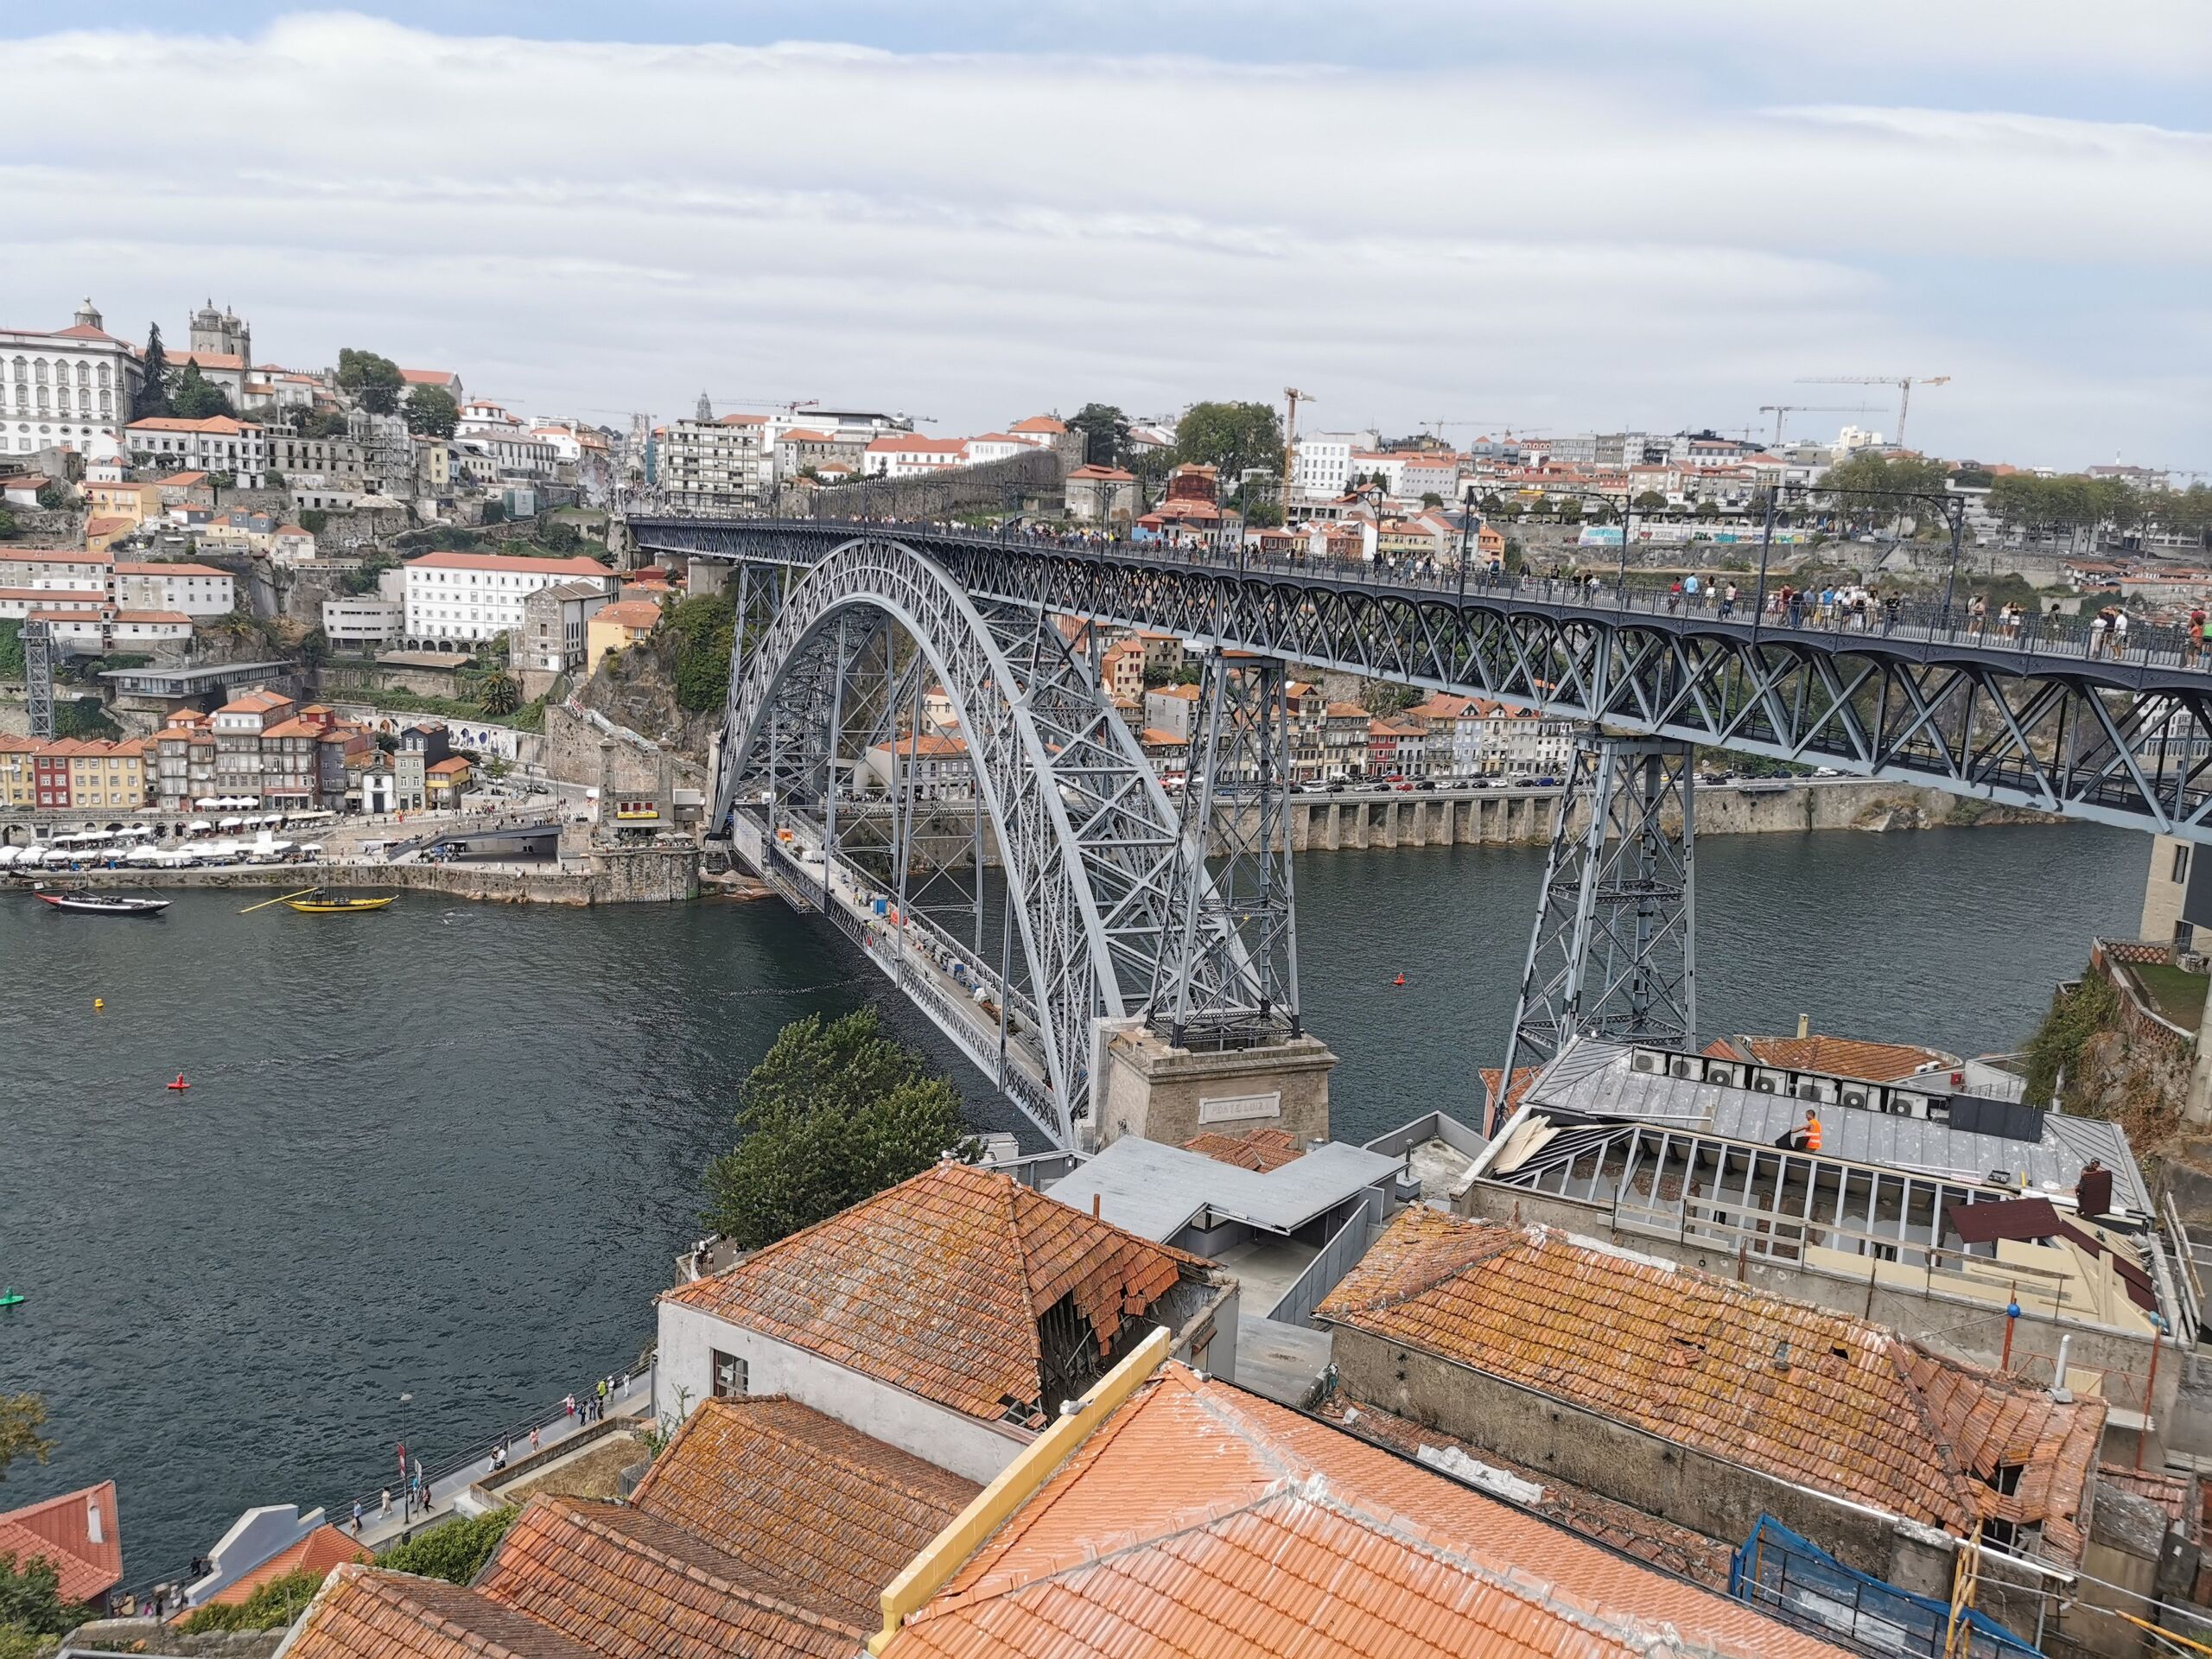 Porto panorama